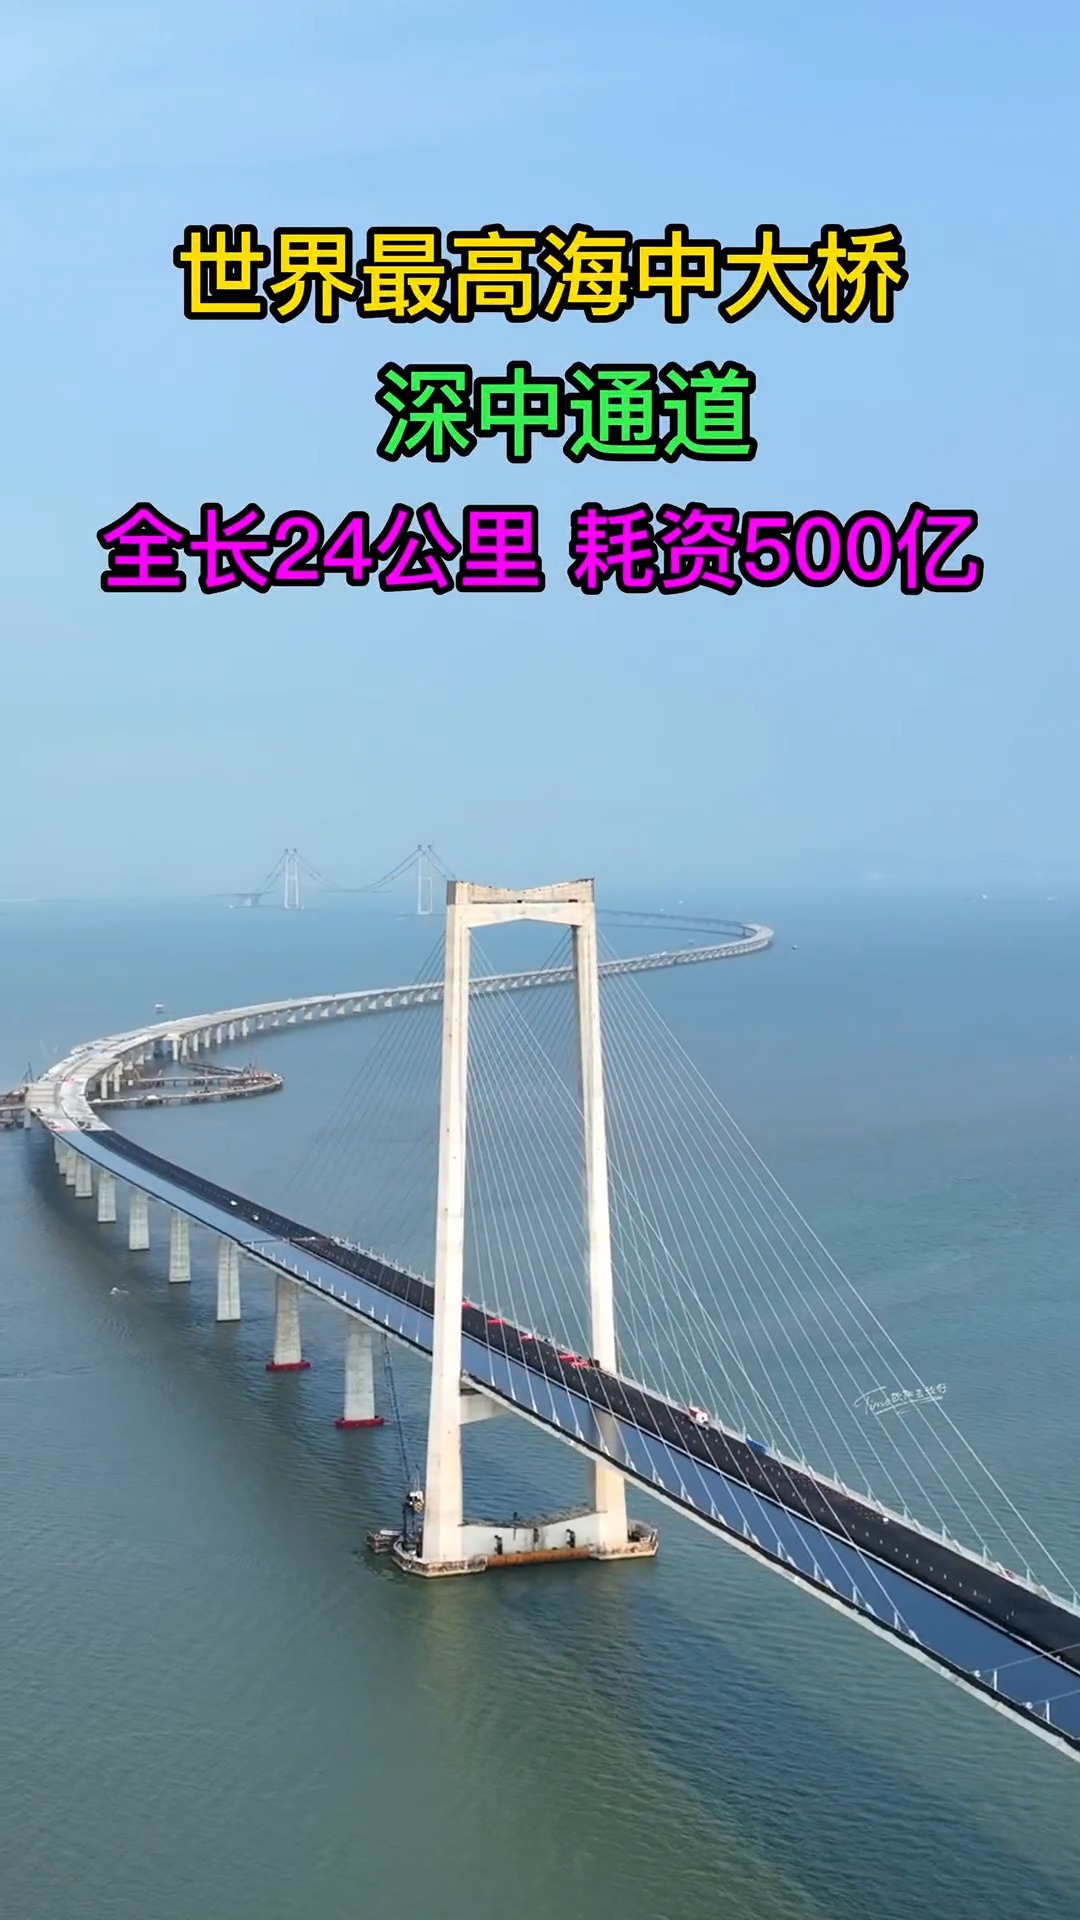 世界最高海中大桥，深中通道，耗资500亿，全长24公里，每公里造价20亿大桥预计2024年建成通车，你期待吗？#深中通道#基建狂魔#大桥#桥梁